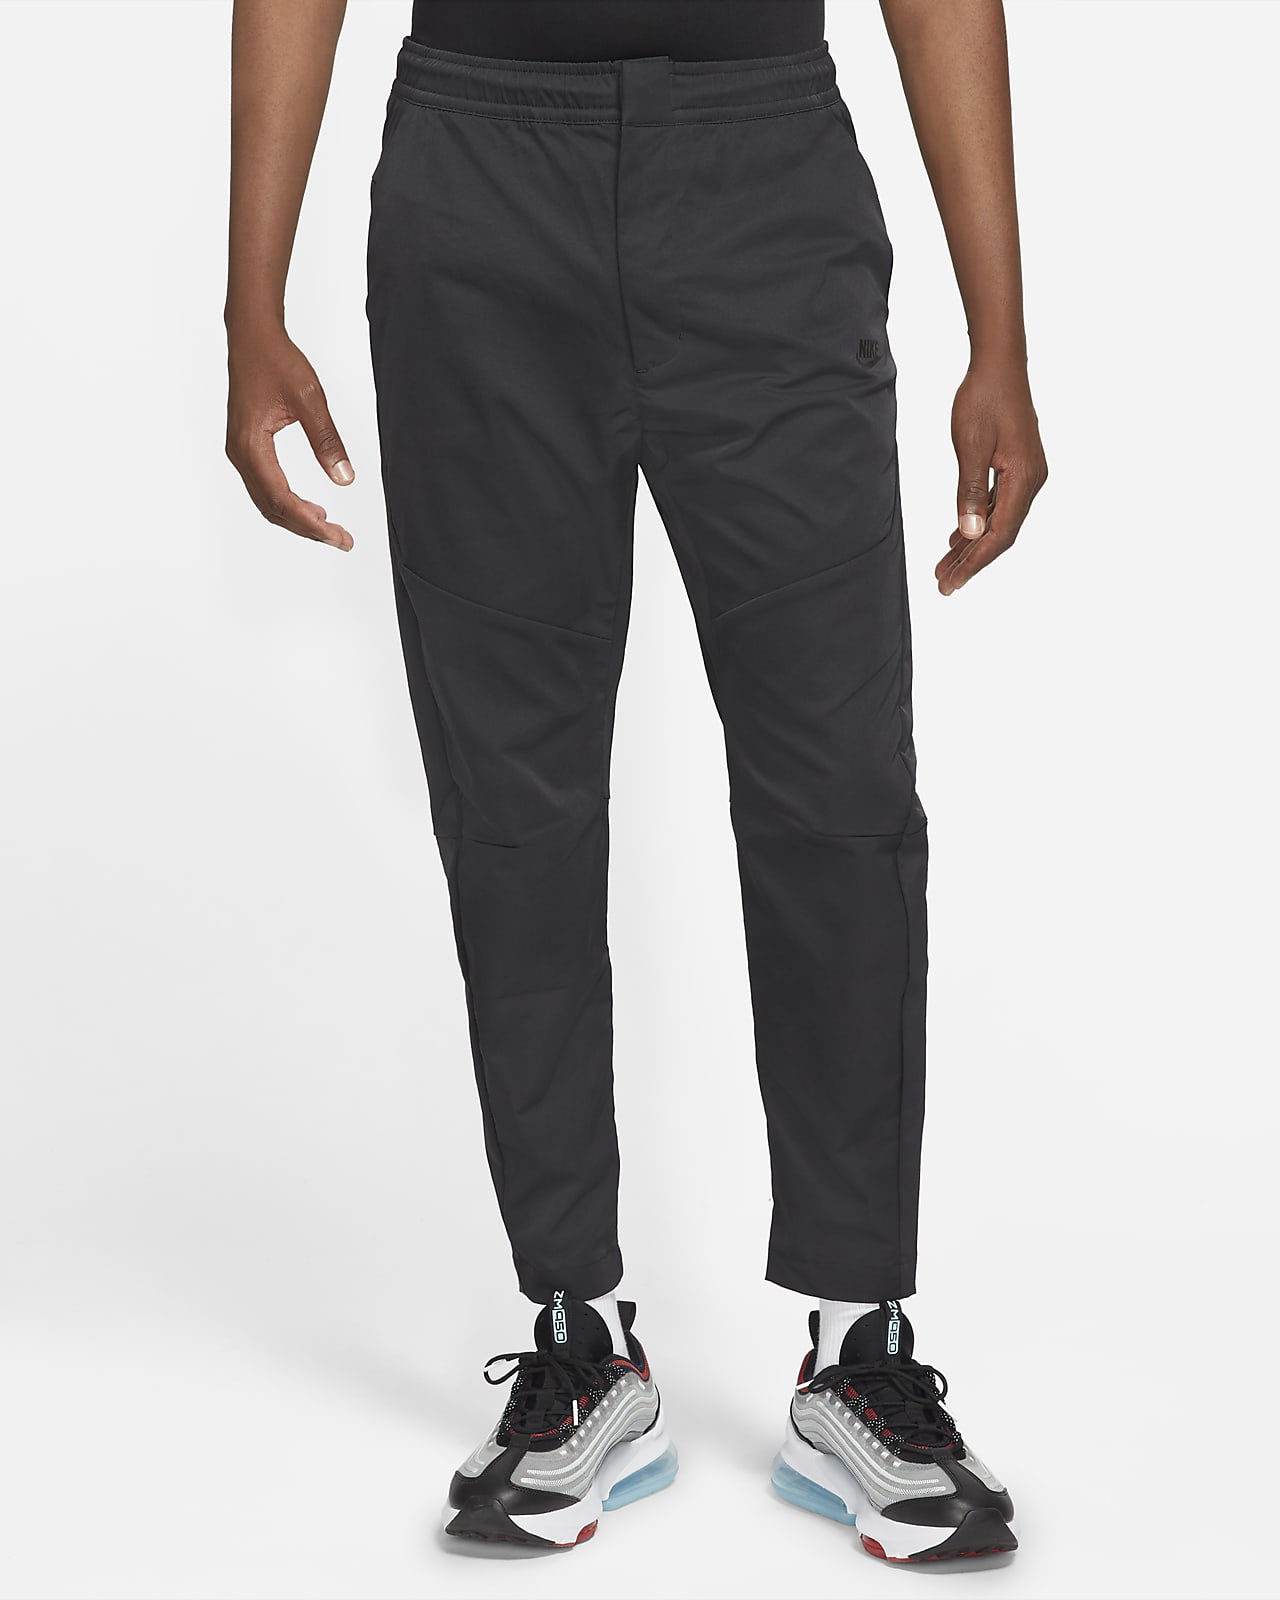 Nike Sportswear Tech Essentials Men's Unlined Commuter Trousers